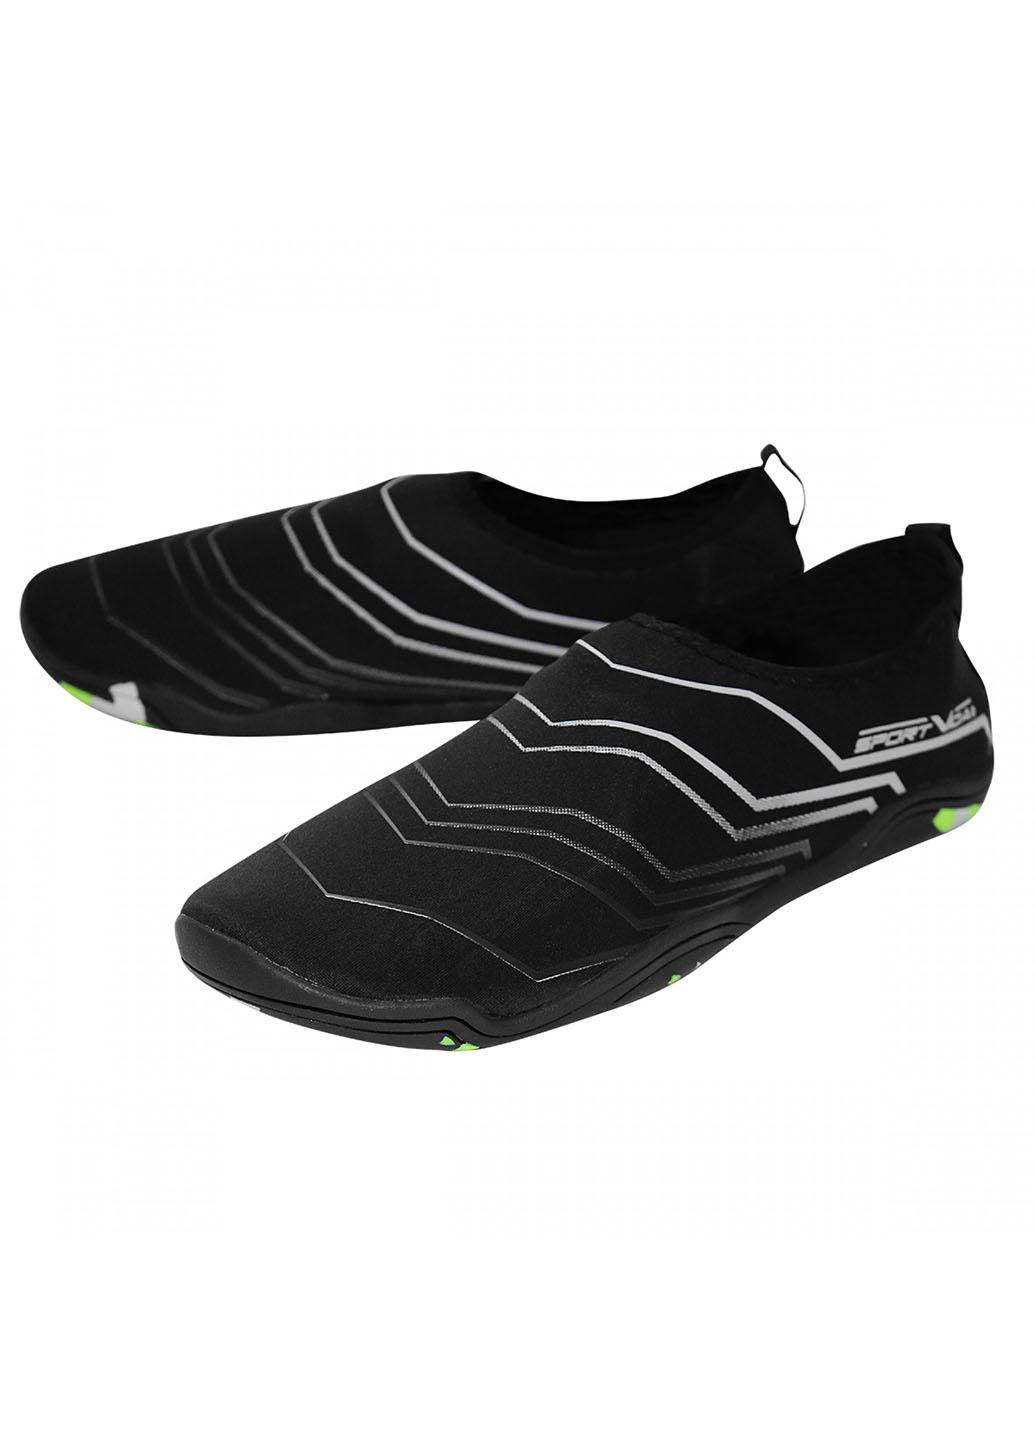 Взуття для пляжу і коралів (аквашузи) SV-GY0006-R45 Size 45 Black/Grey SportVida (258486781)